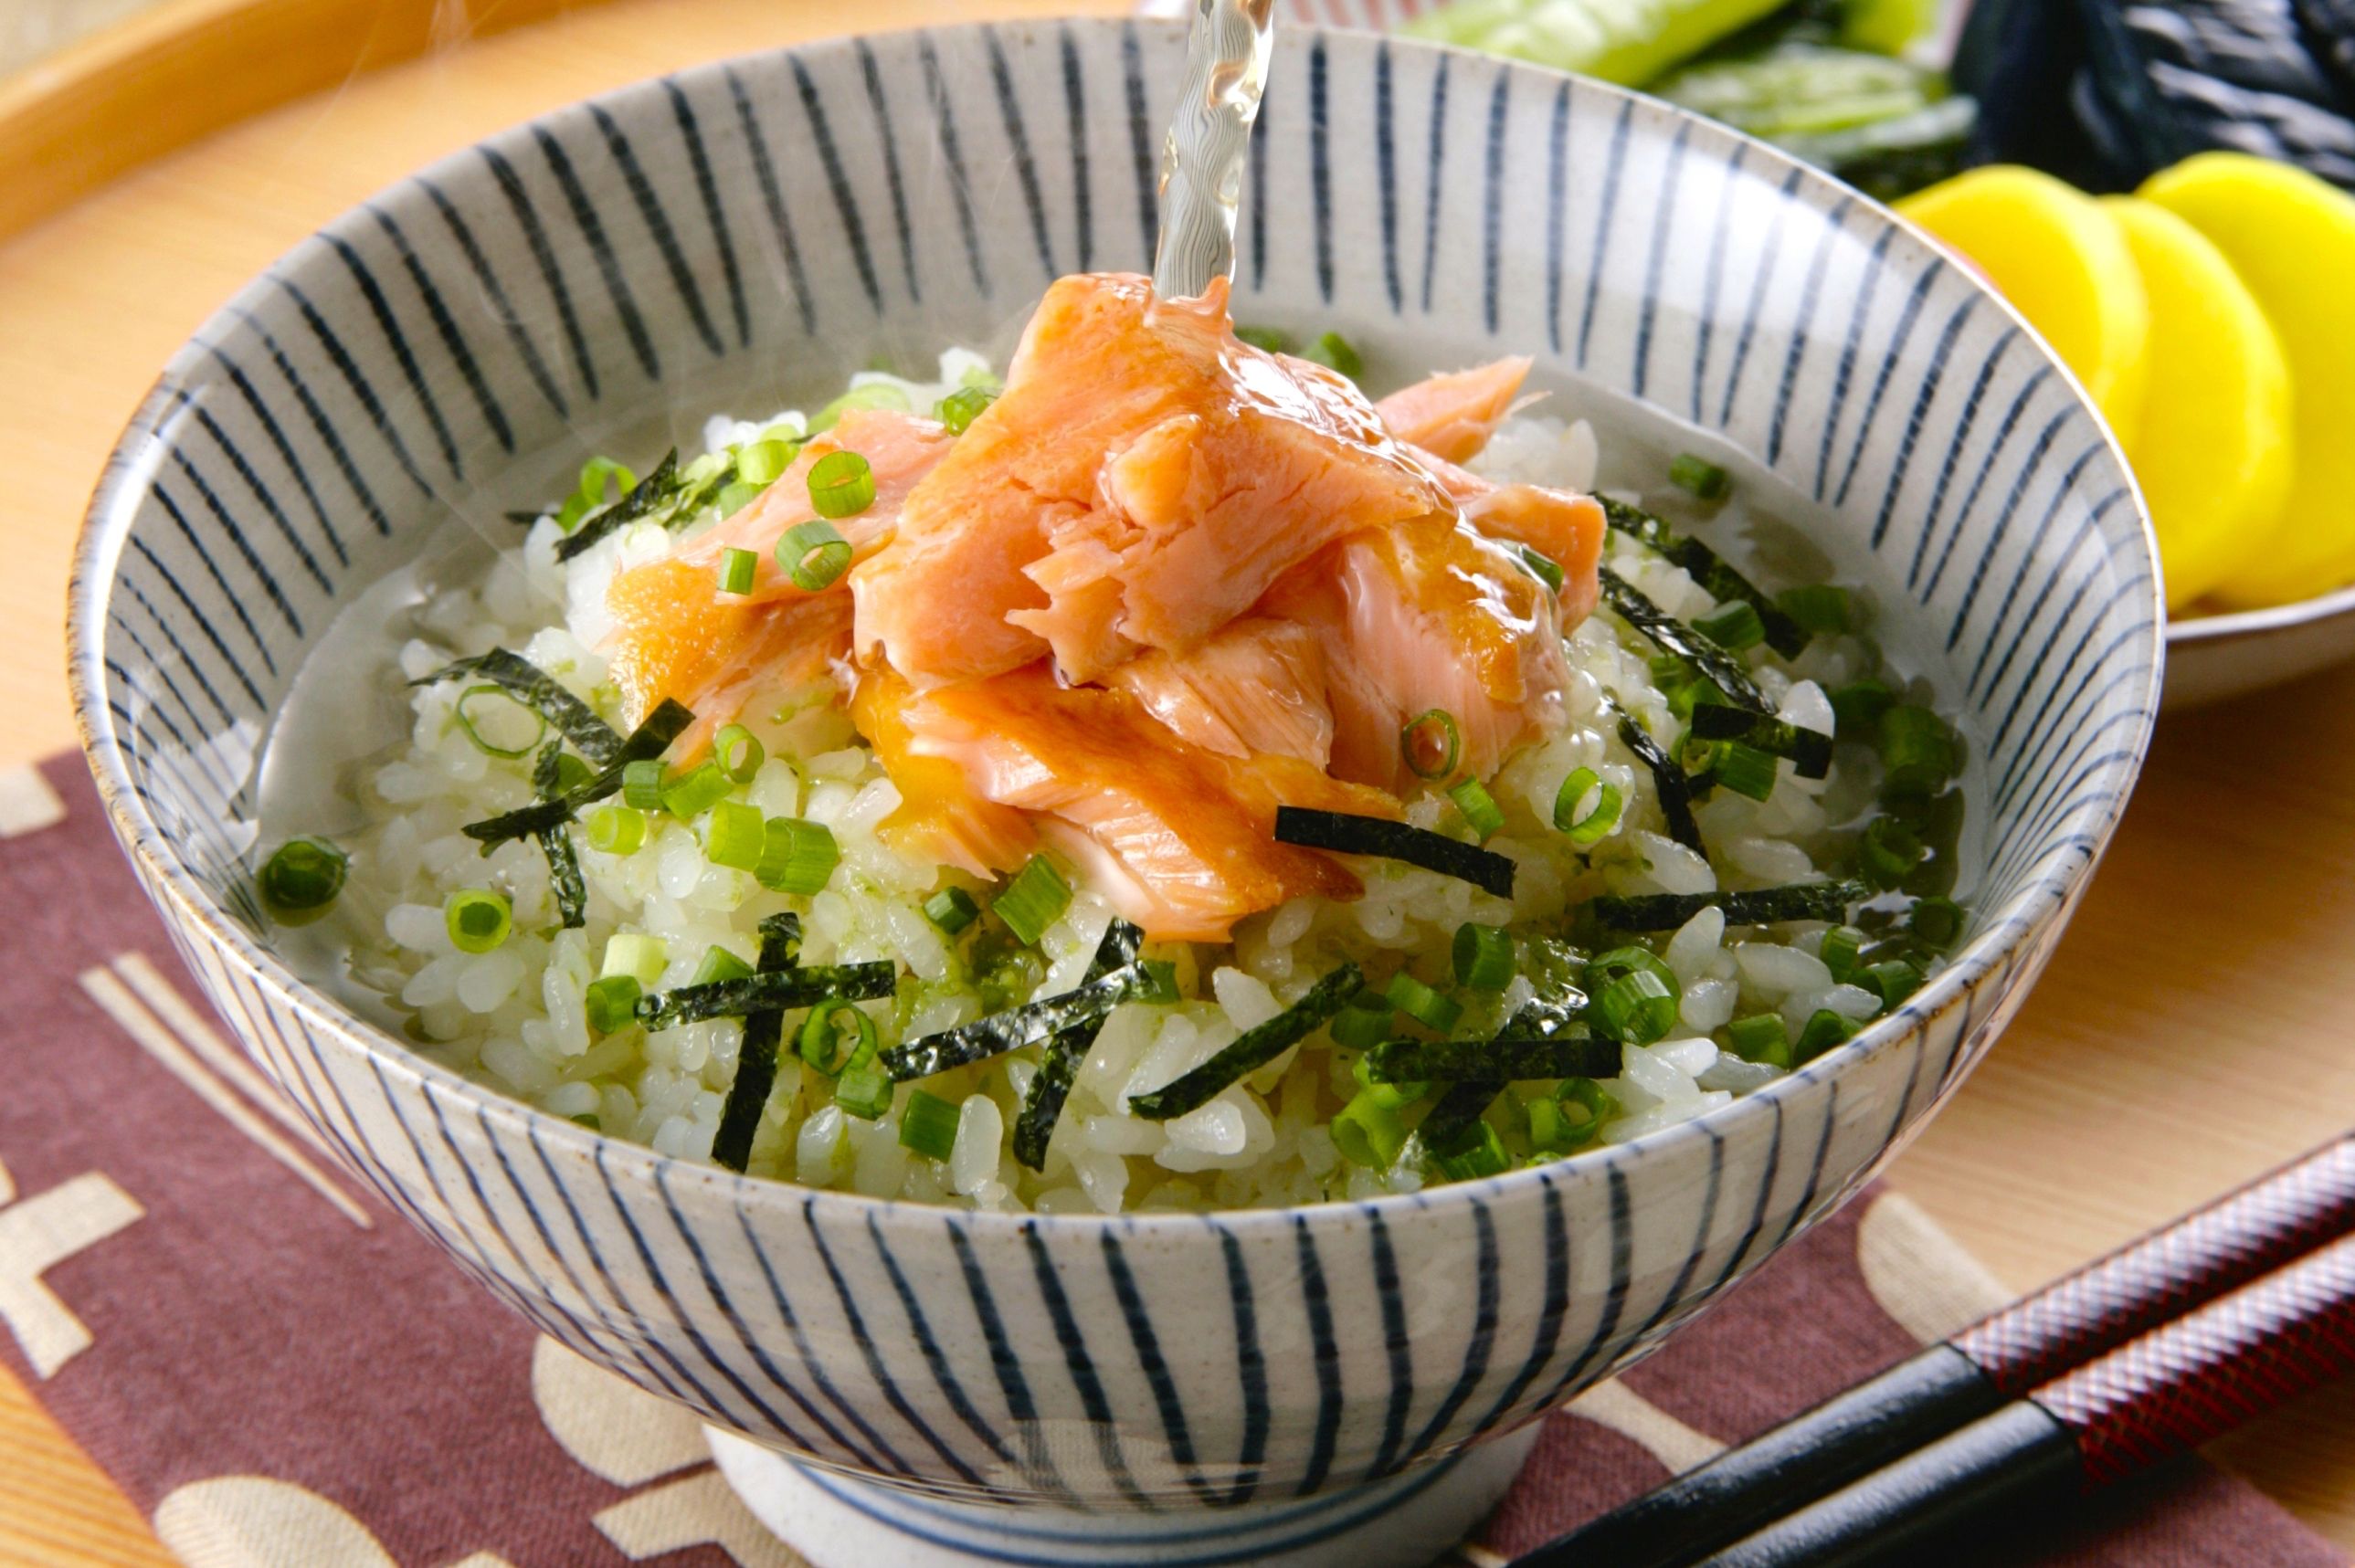 Как Приготовить Японский Суп Из Зеленого Чая - описание и основные характеристики